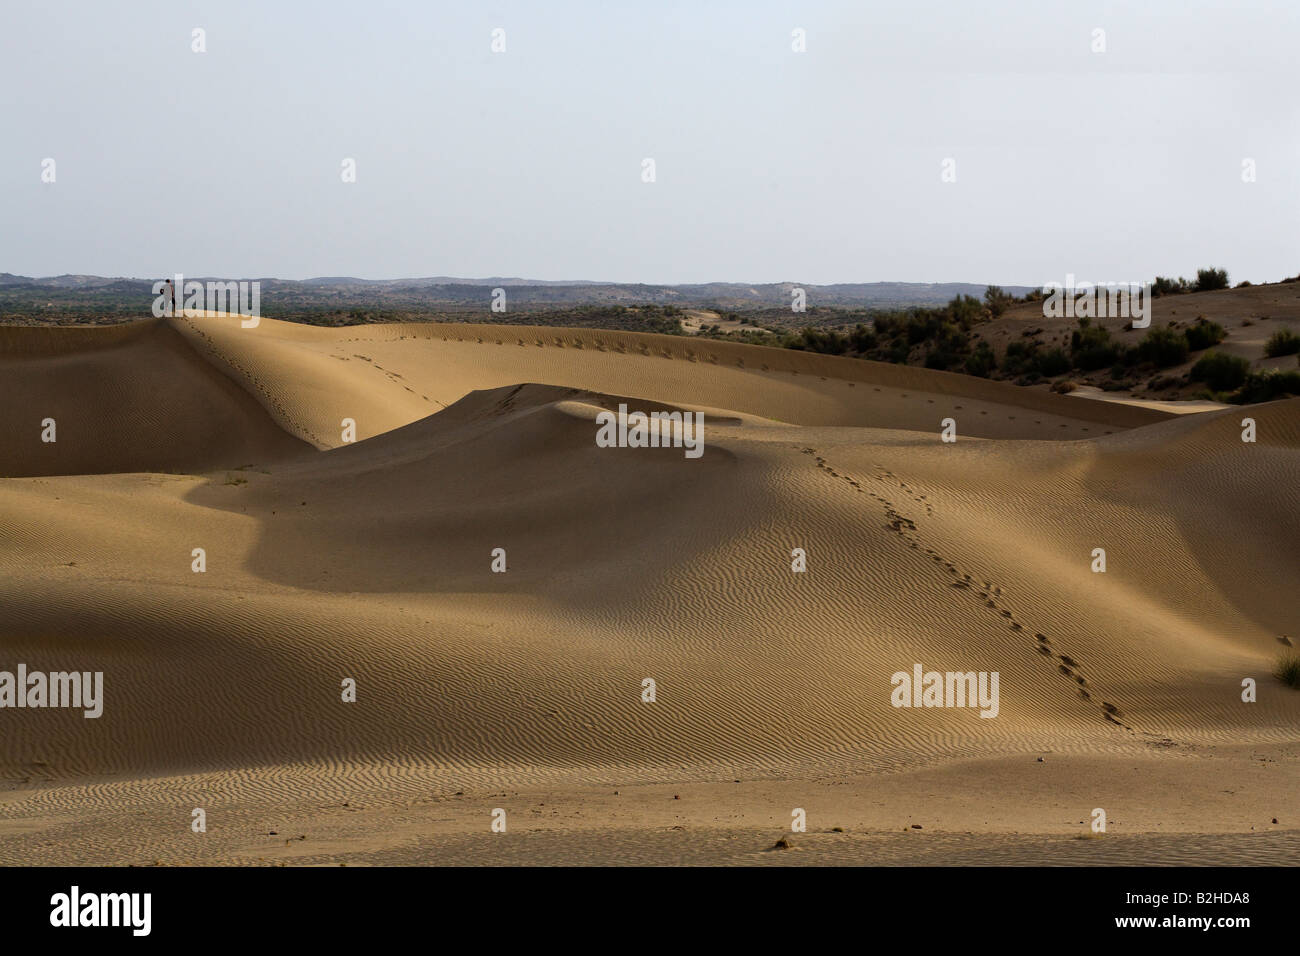 Einsamkeit finden Sie in den Sanddünen der Wüste THAR nahe JAISALMER RAJASTHAN Indien Herr Stockfoto